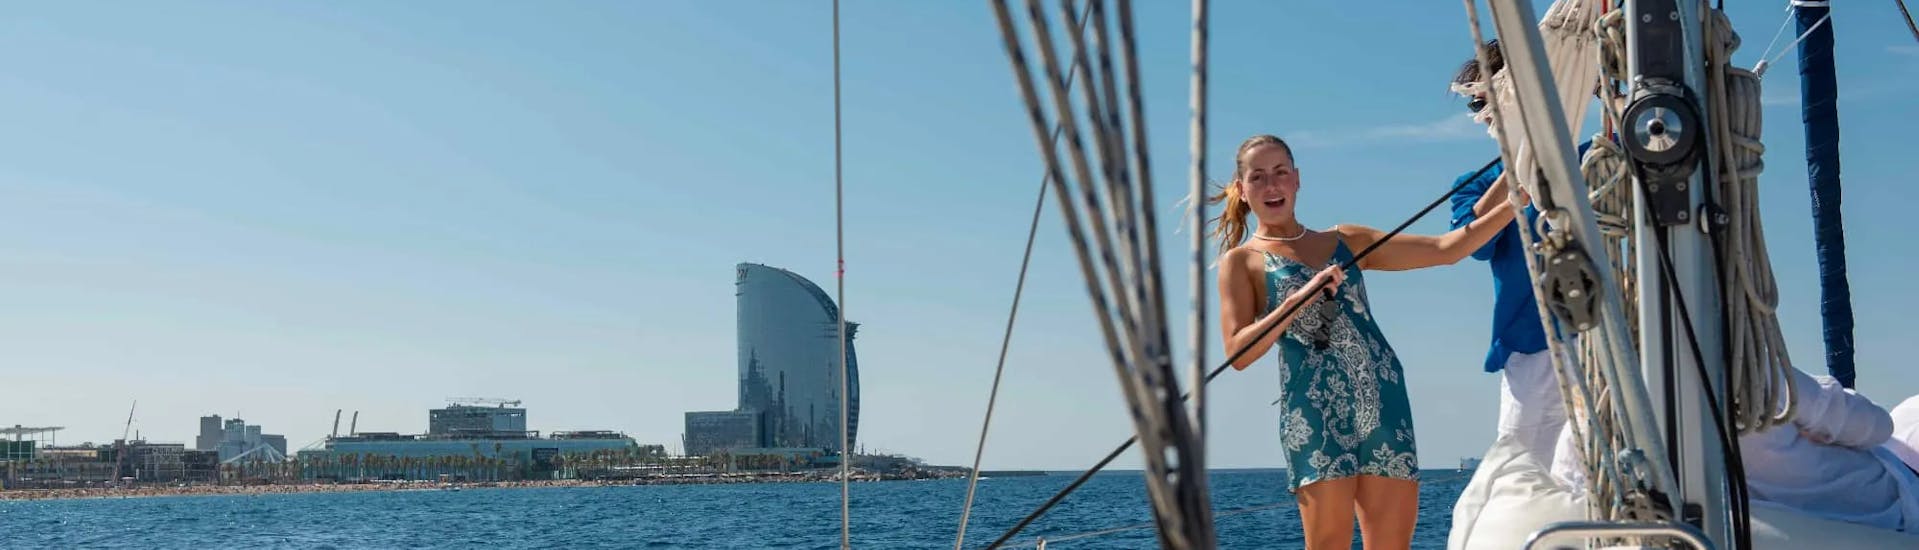 Gita in barca a vela a Spiaggia di Barceloneta al tramonto e visita turistica.